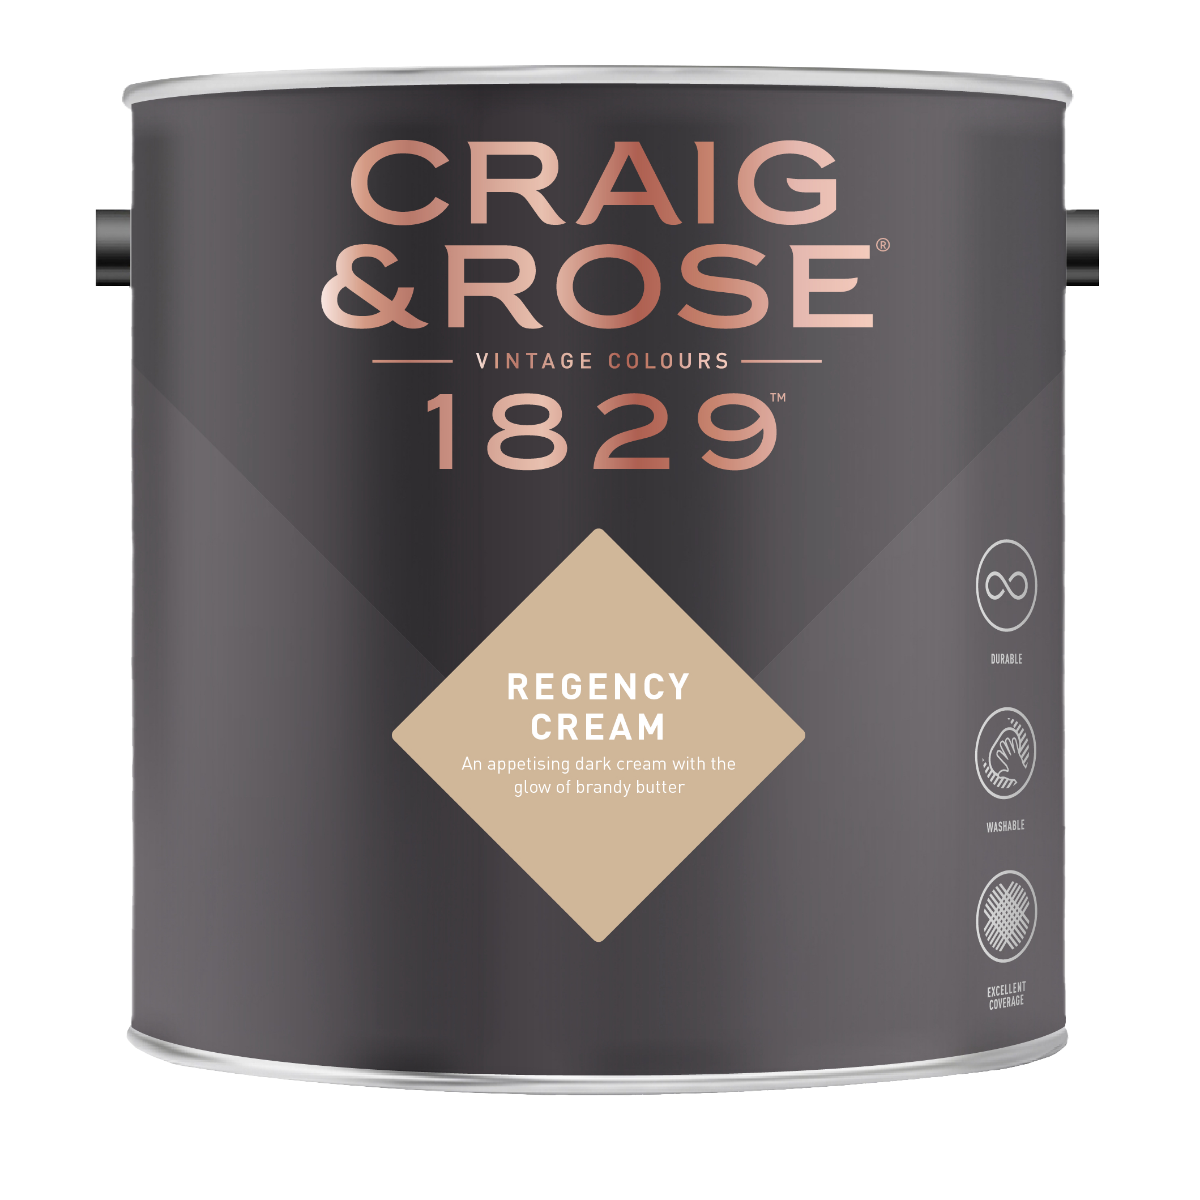 Craig & Rose 1829 Regency Cream